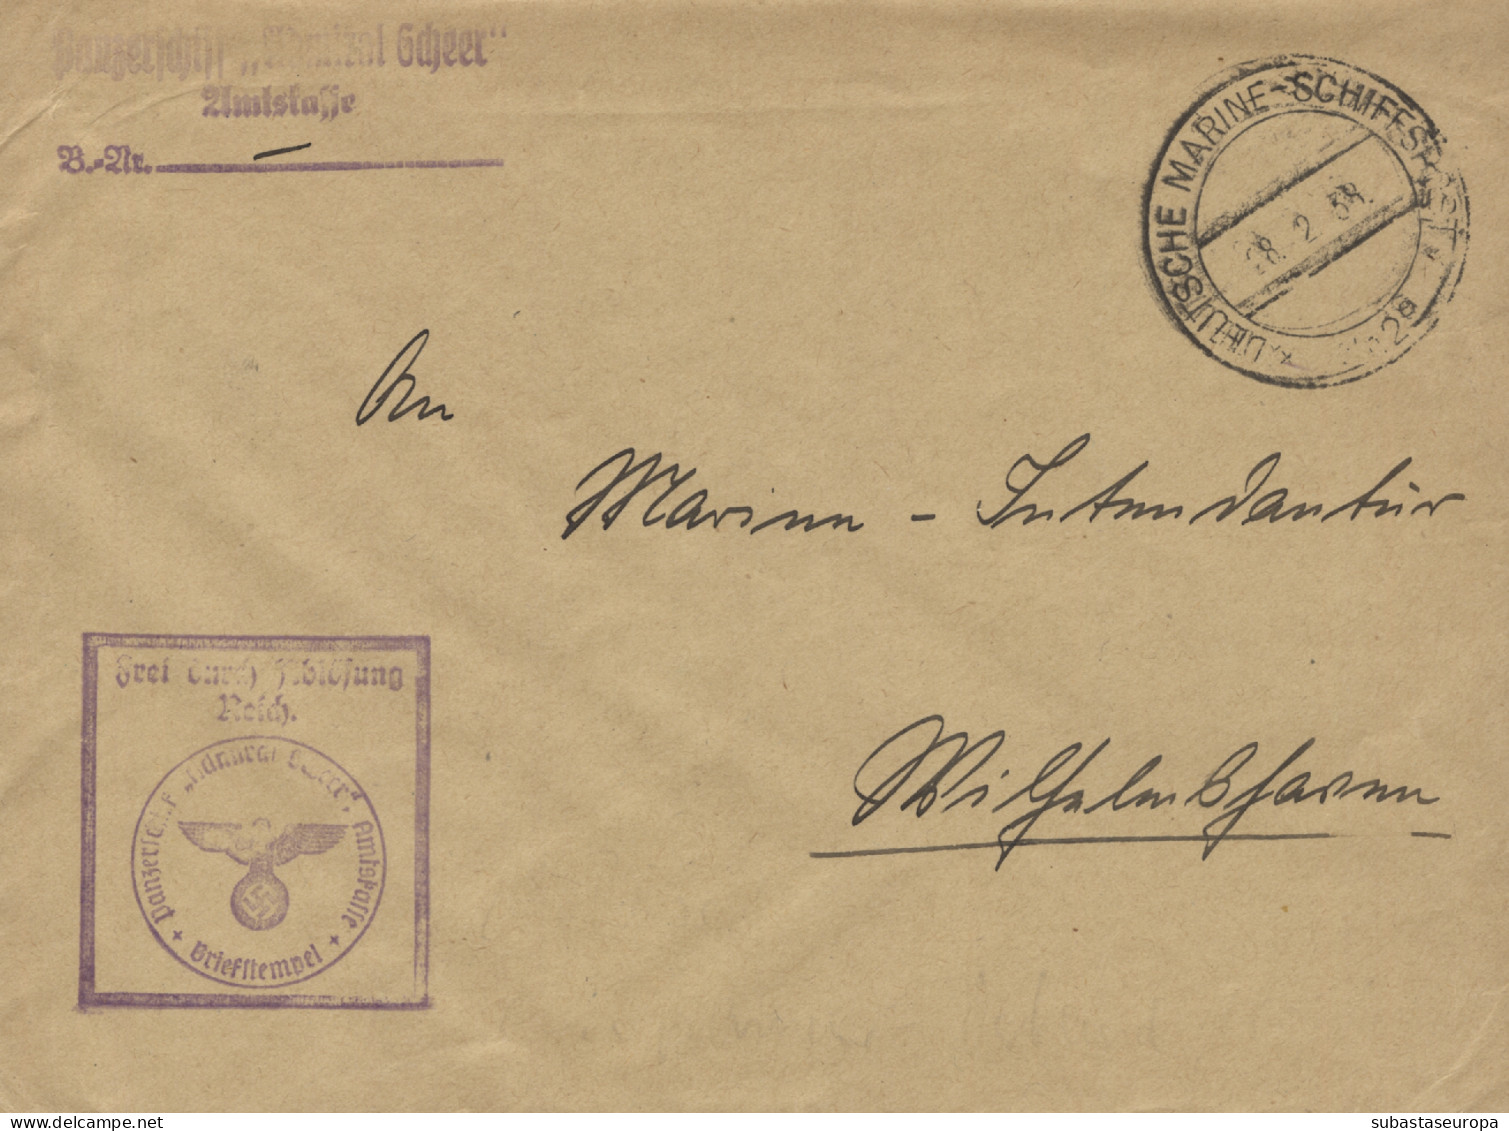 Carta Circulada Con Marca Panzerschiff Admiral Graf Spee De La Marina Alemana, El 22/2/38. Fuerzas Alemanas Que Lucharon - Nationalists Censor Marks